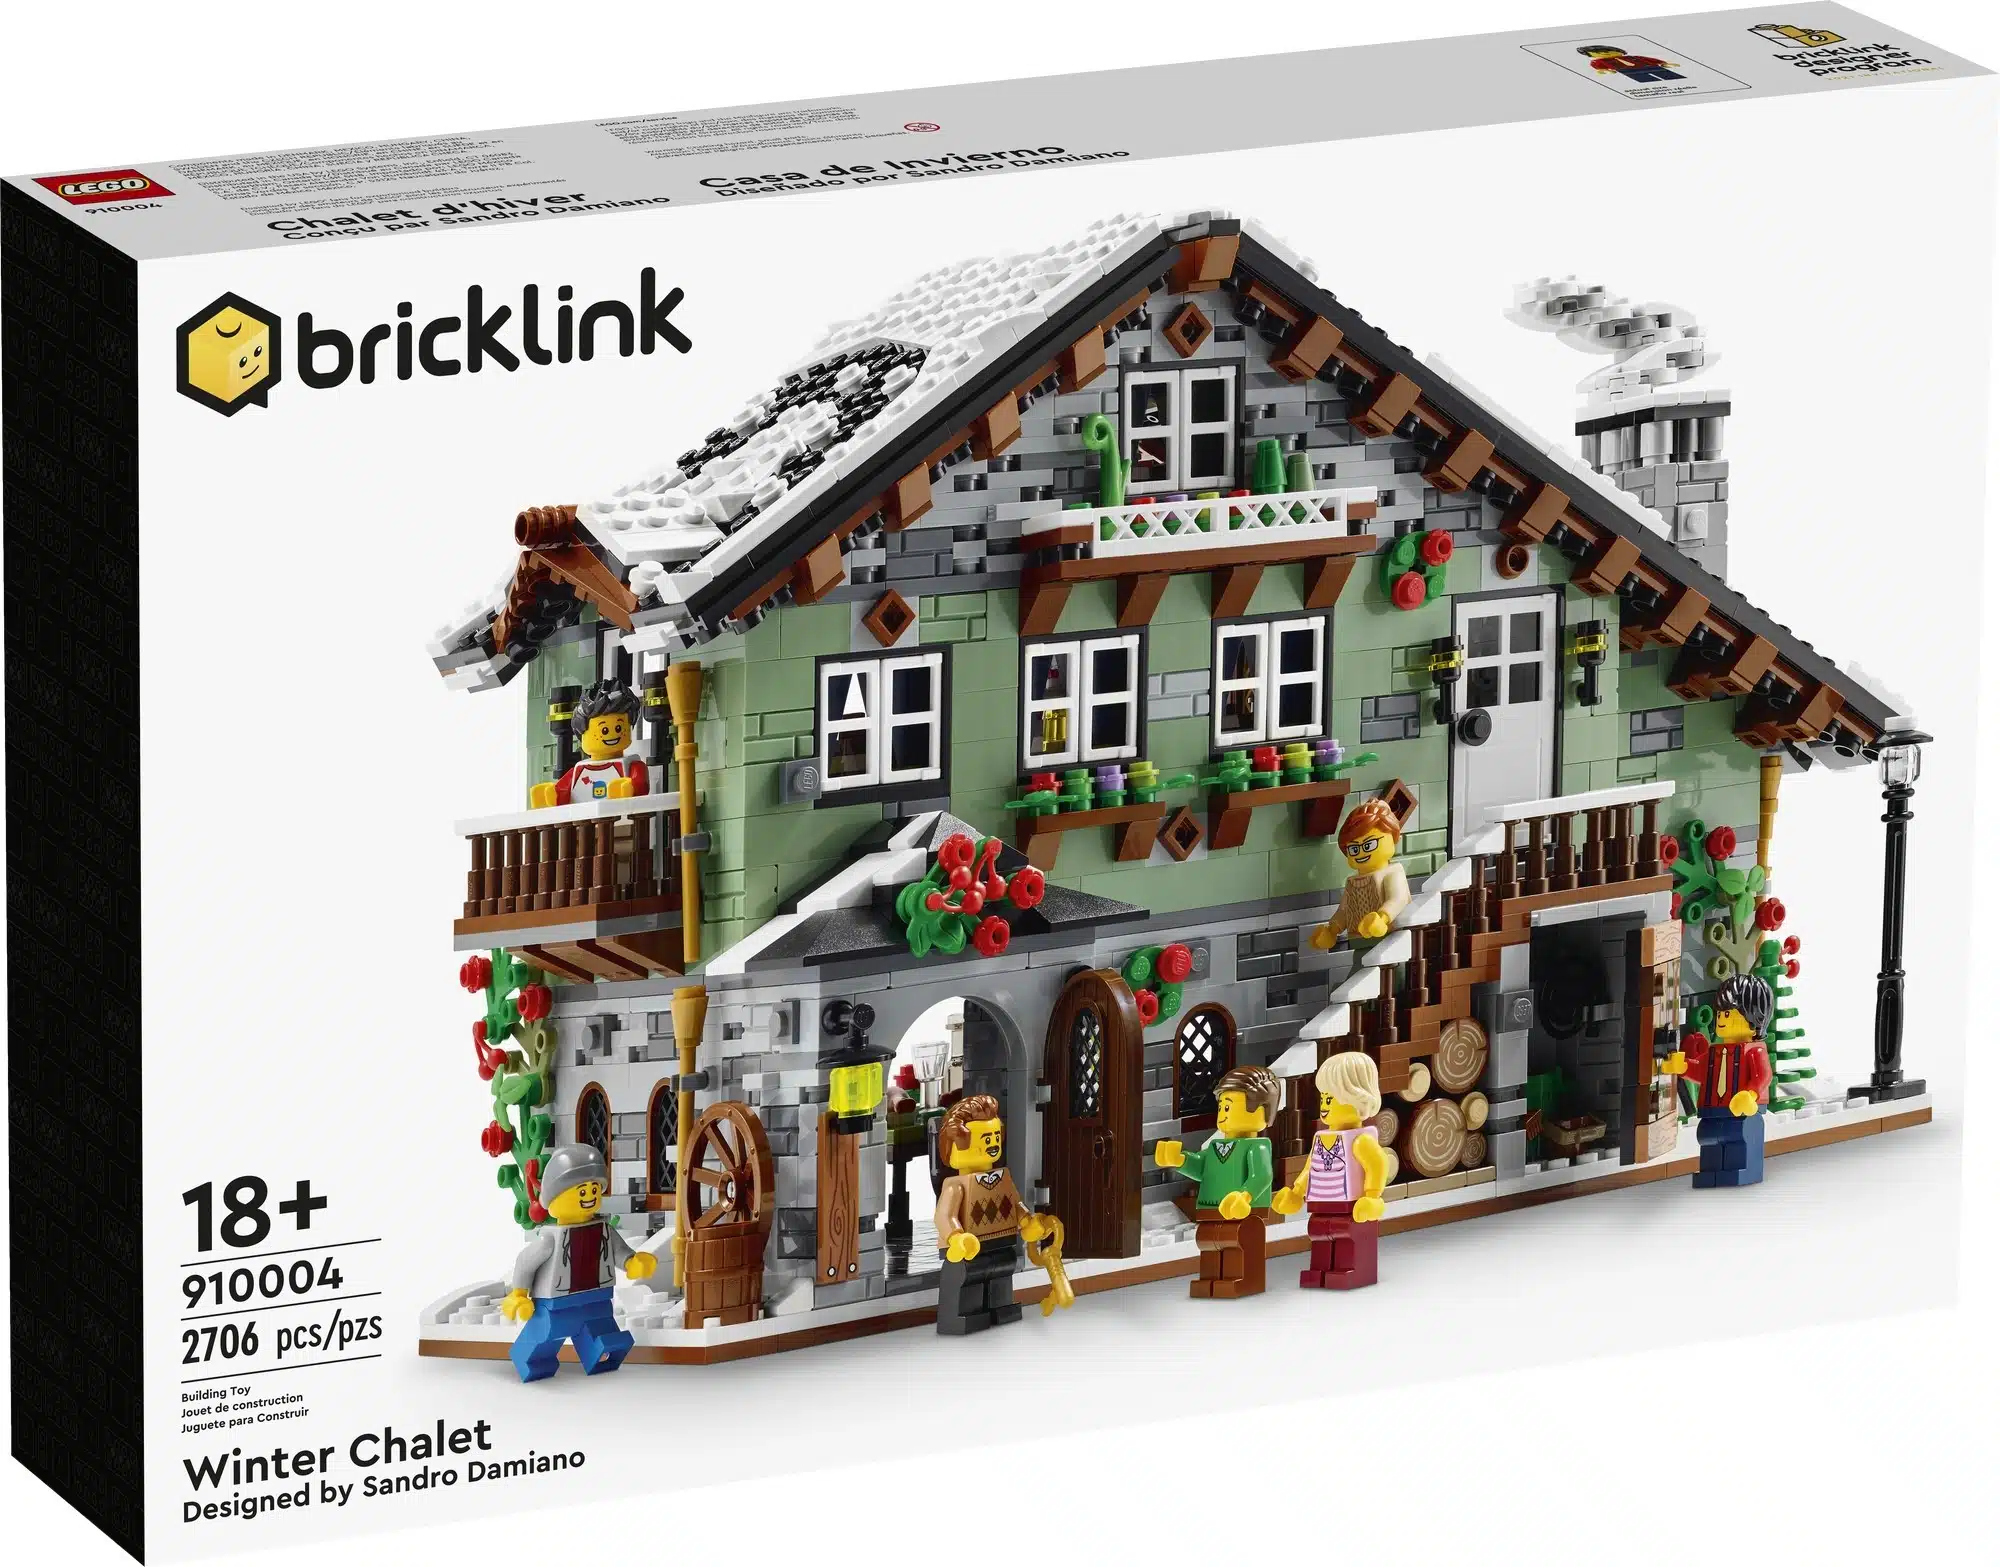 Bricklink Designer Program Round 3 Official Box Images Revealed